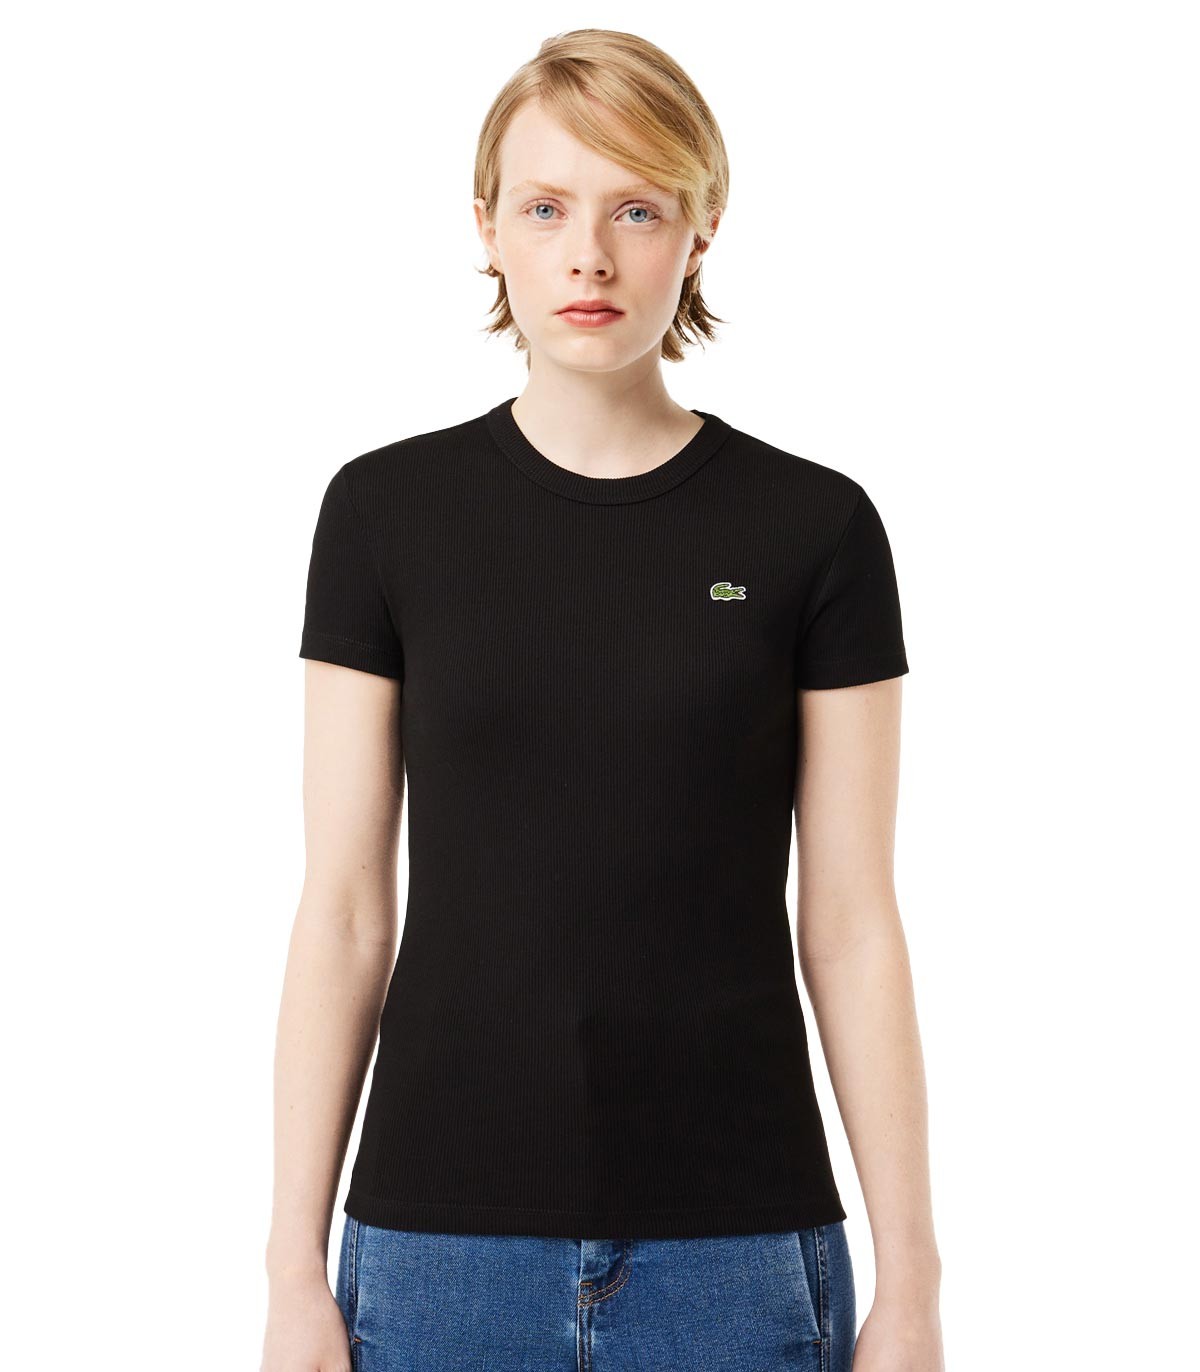 Lacoste - Camiseta Slim Fit - Negro